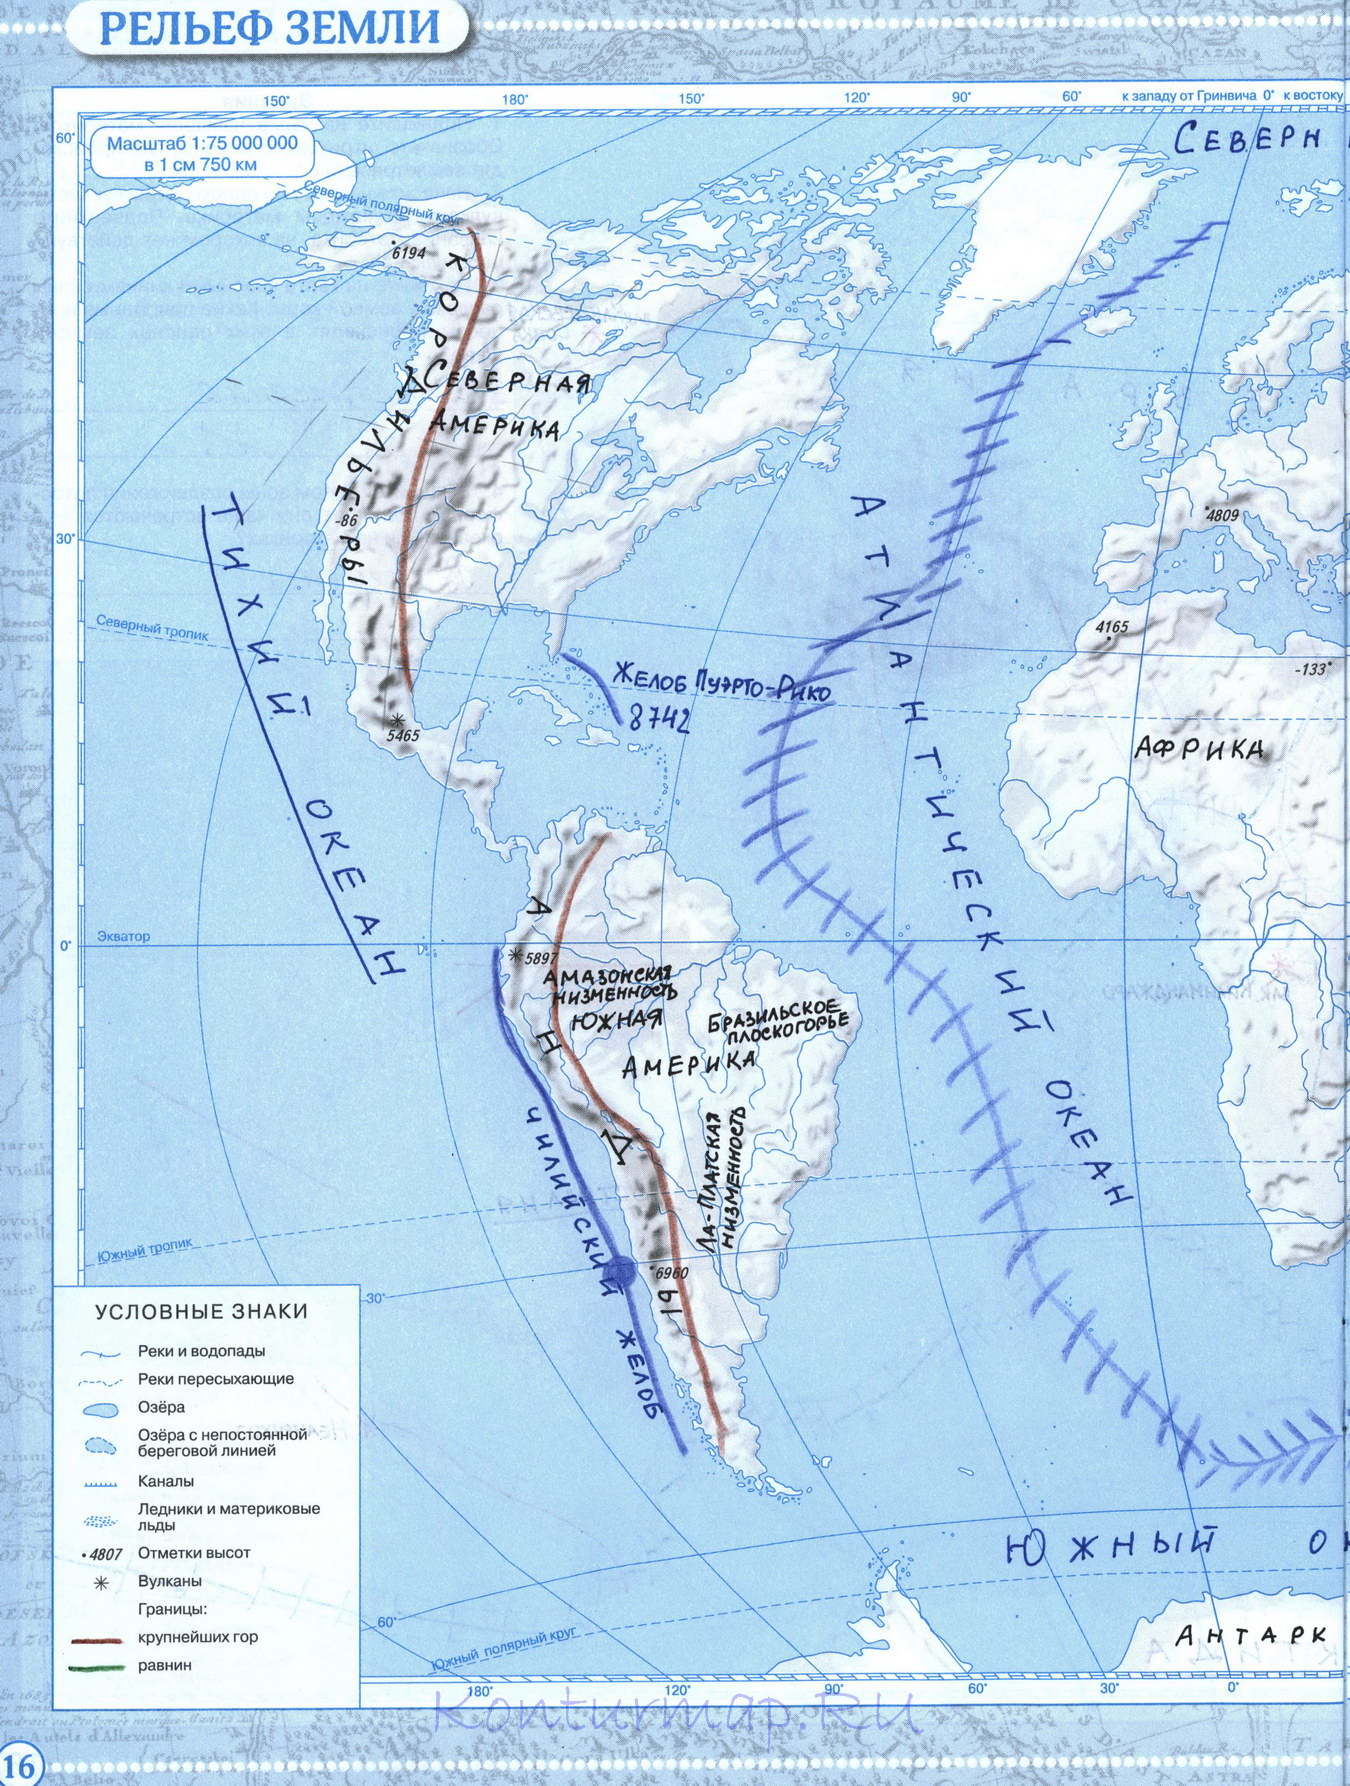 Решебник контурной карты по географии 8 класс океаны